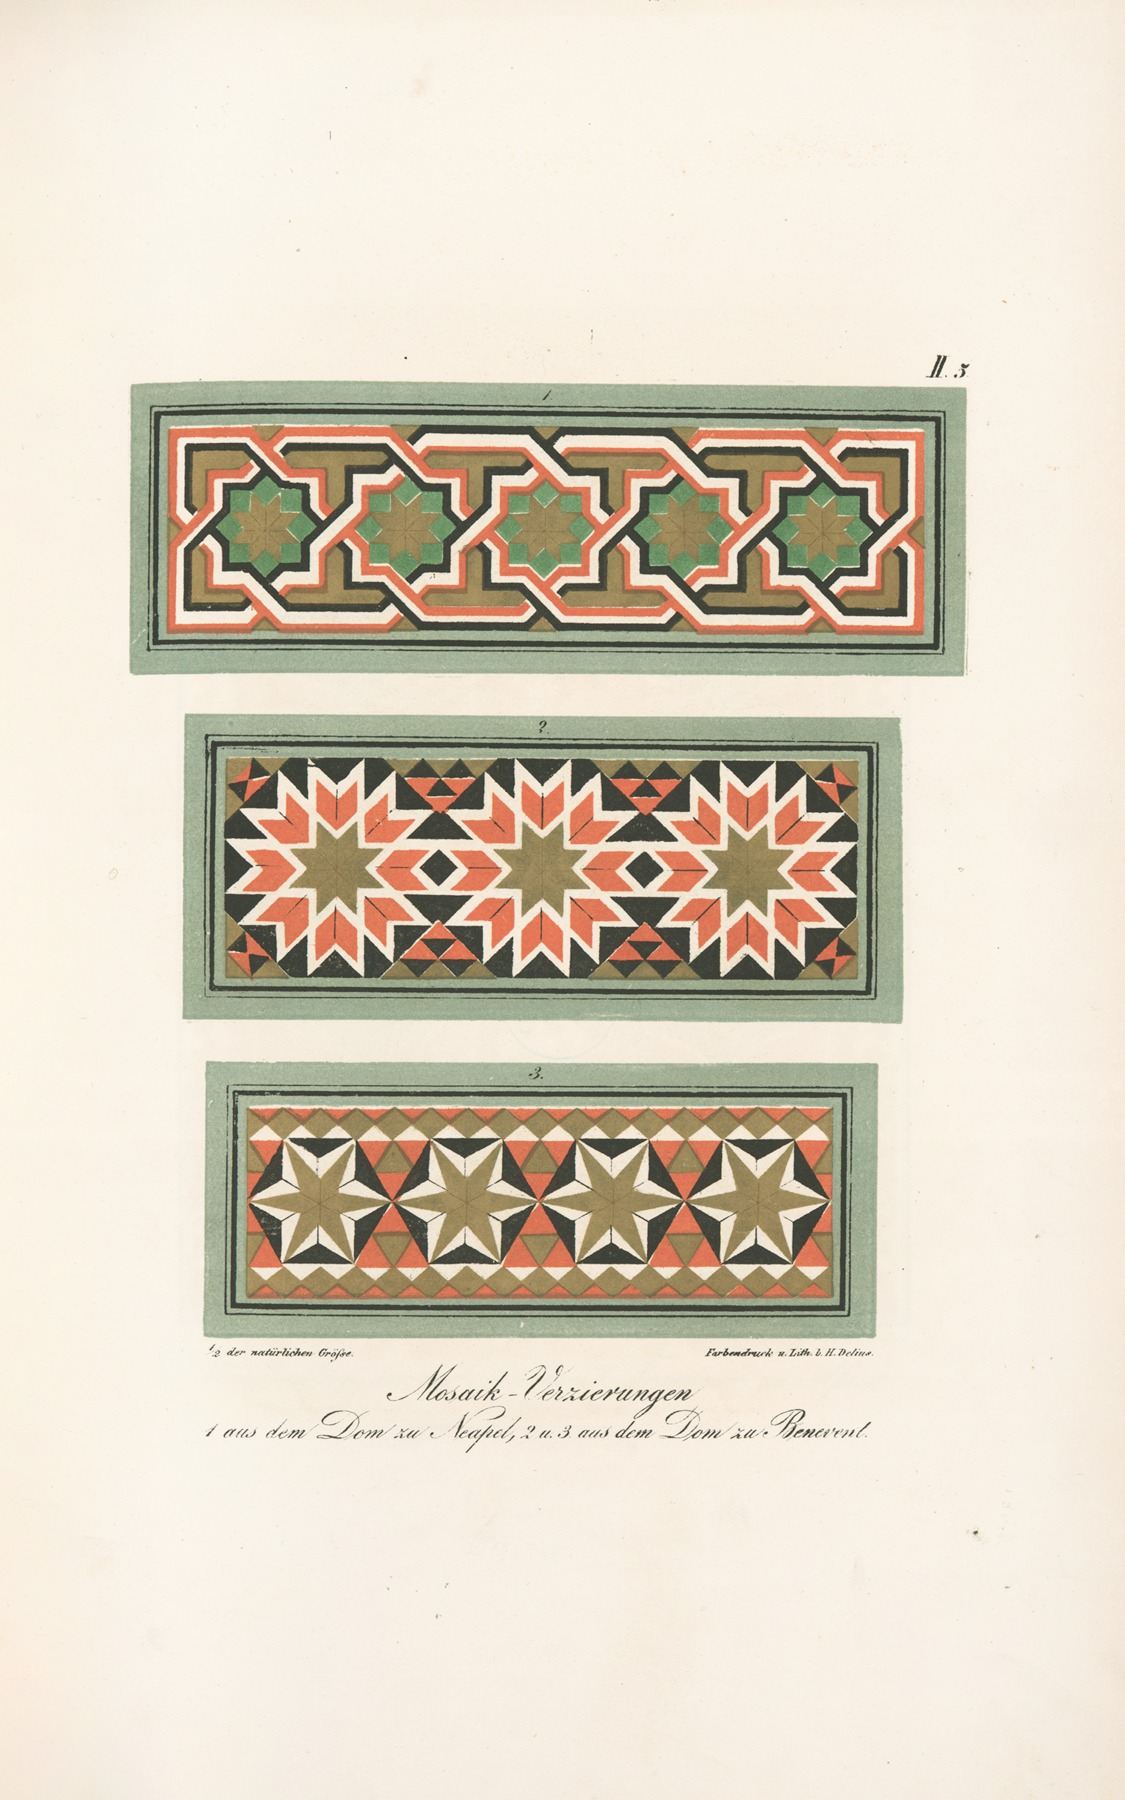 Friedrich Maximilian Hessemer - Mosaik-Verzierungen, 1 aus den Dom zu Neapel, 2 u. 3 aus dem Dom zu Benevent